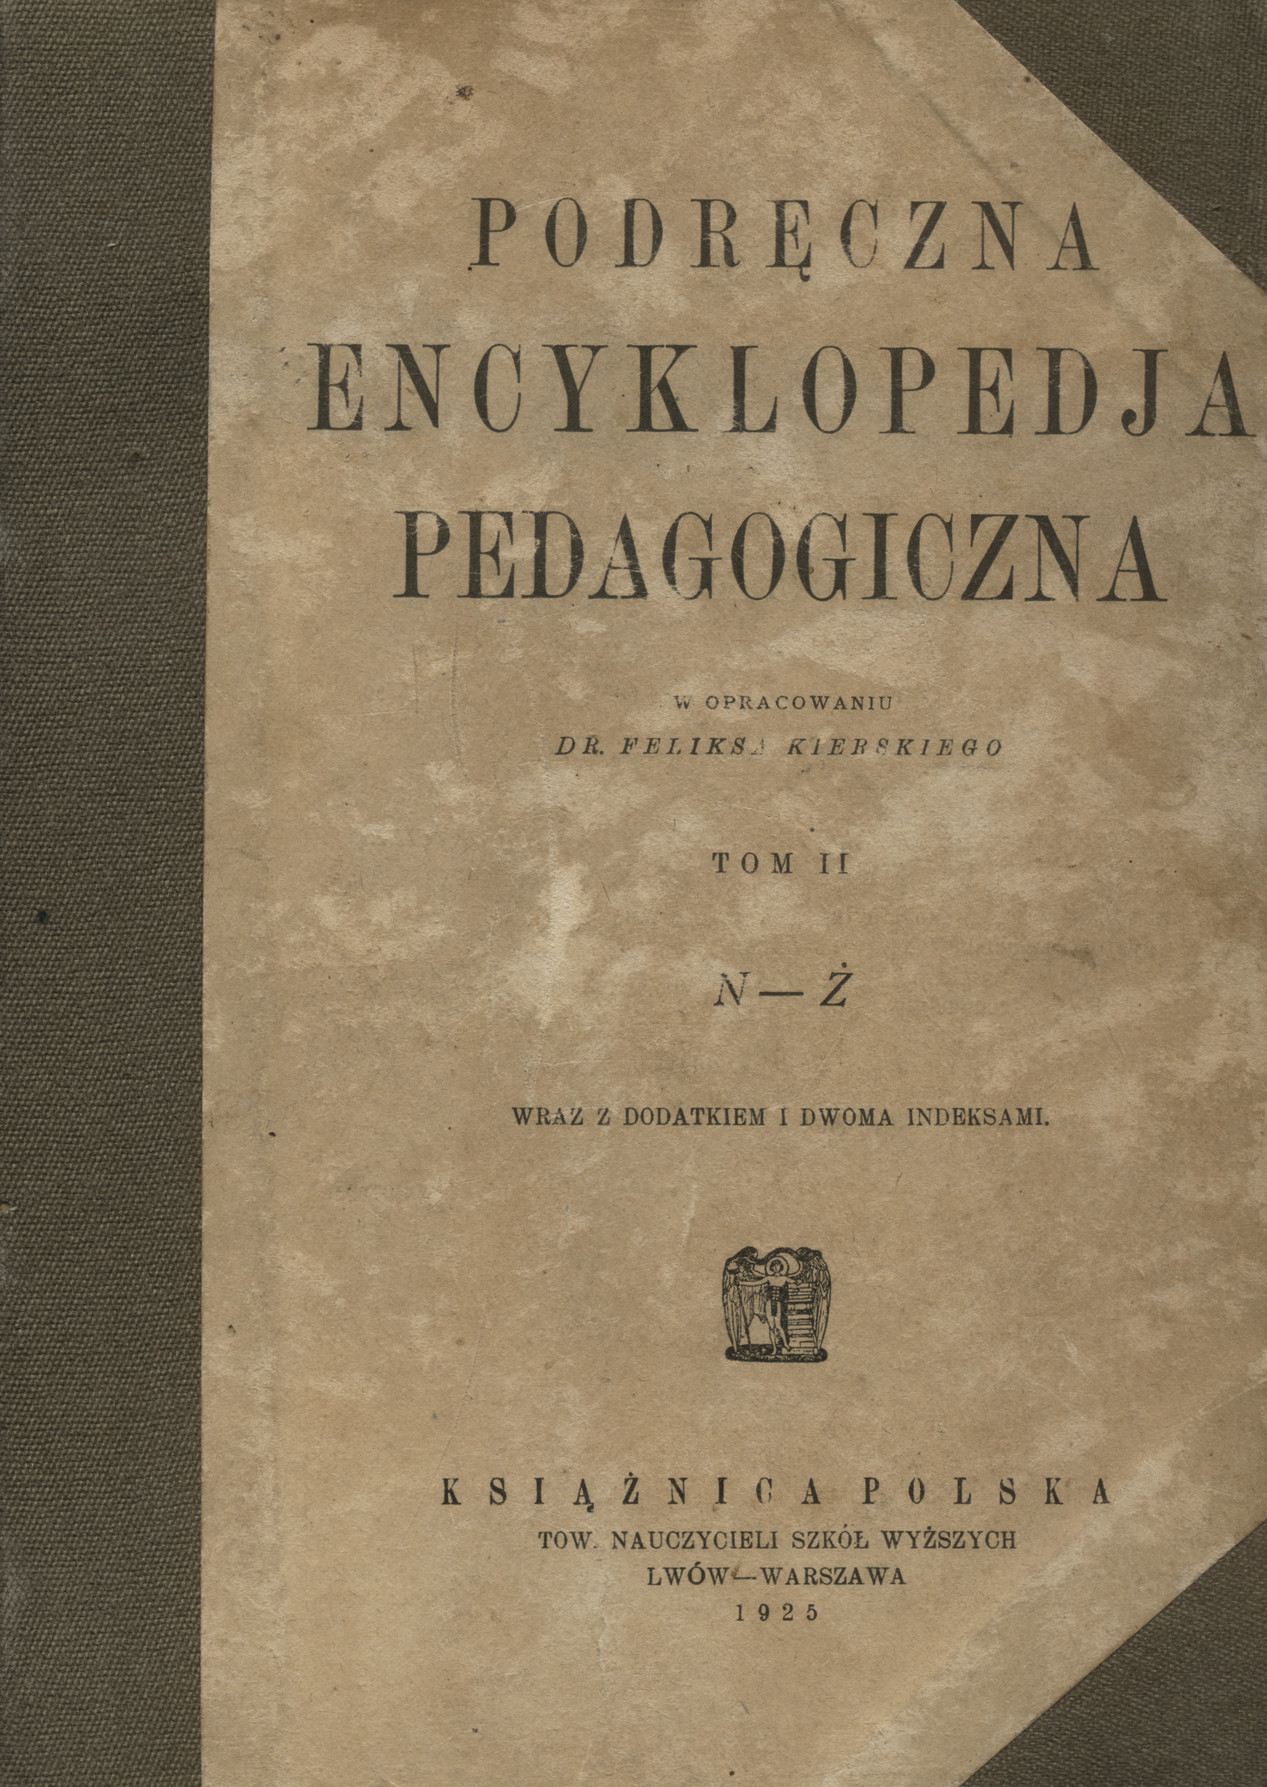 Podręczna encyklopedja pedagogiczna : wraz z dodatkiem i dwoma indeksami. T. 2, N-Ż